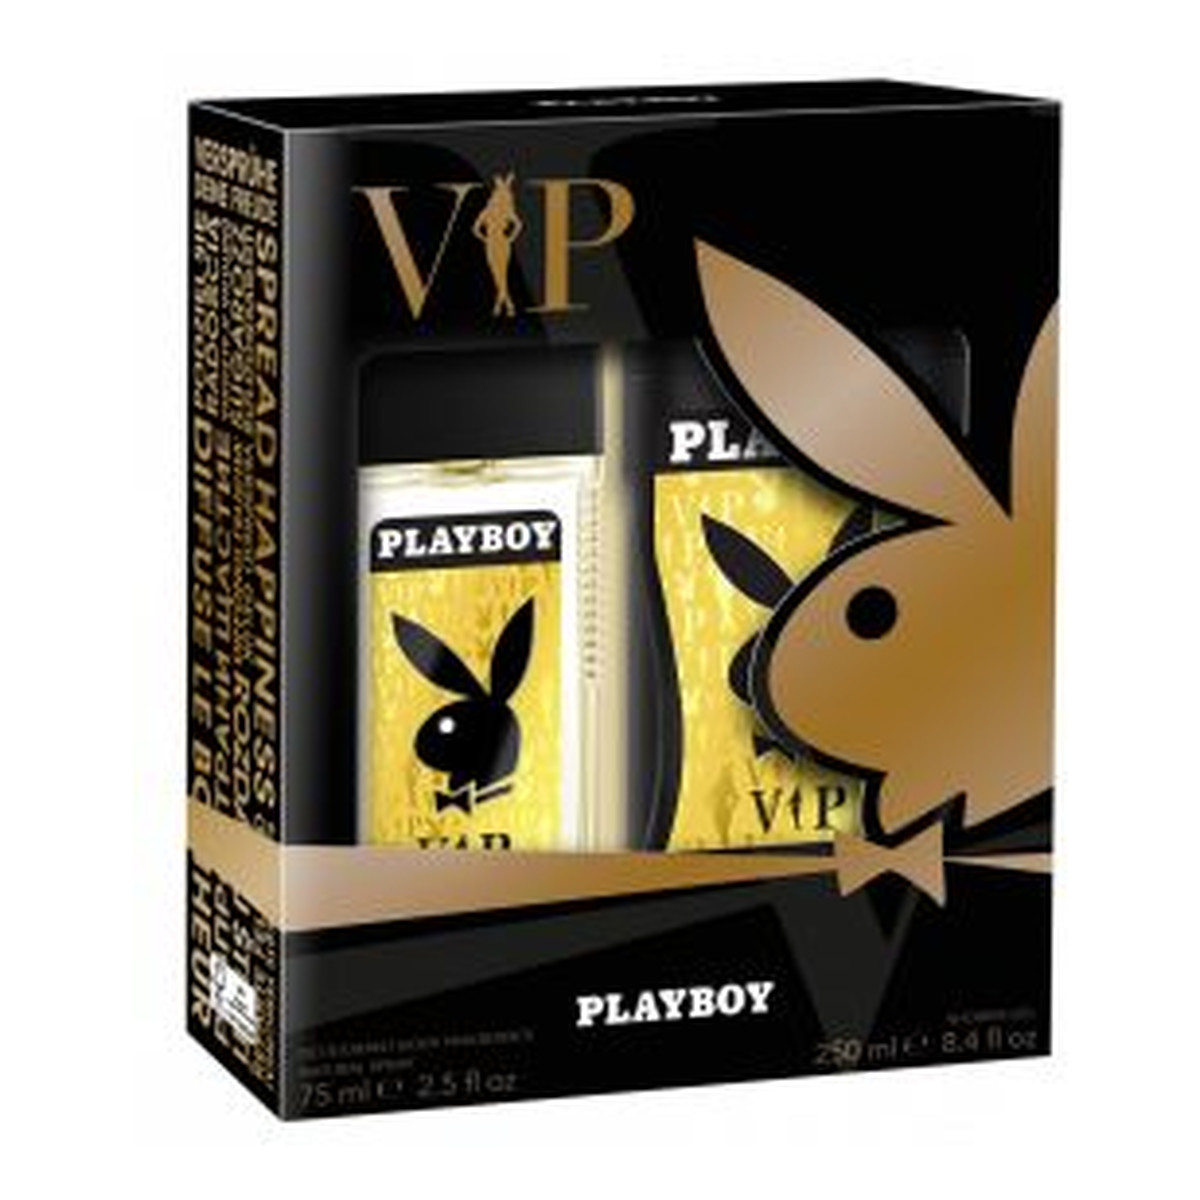 Playboy Vip Zestaw prezentowy dezodorant naturalny spray + żel pod prysznic